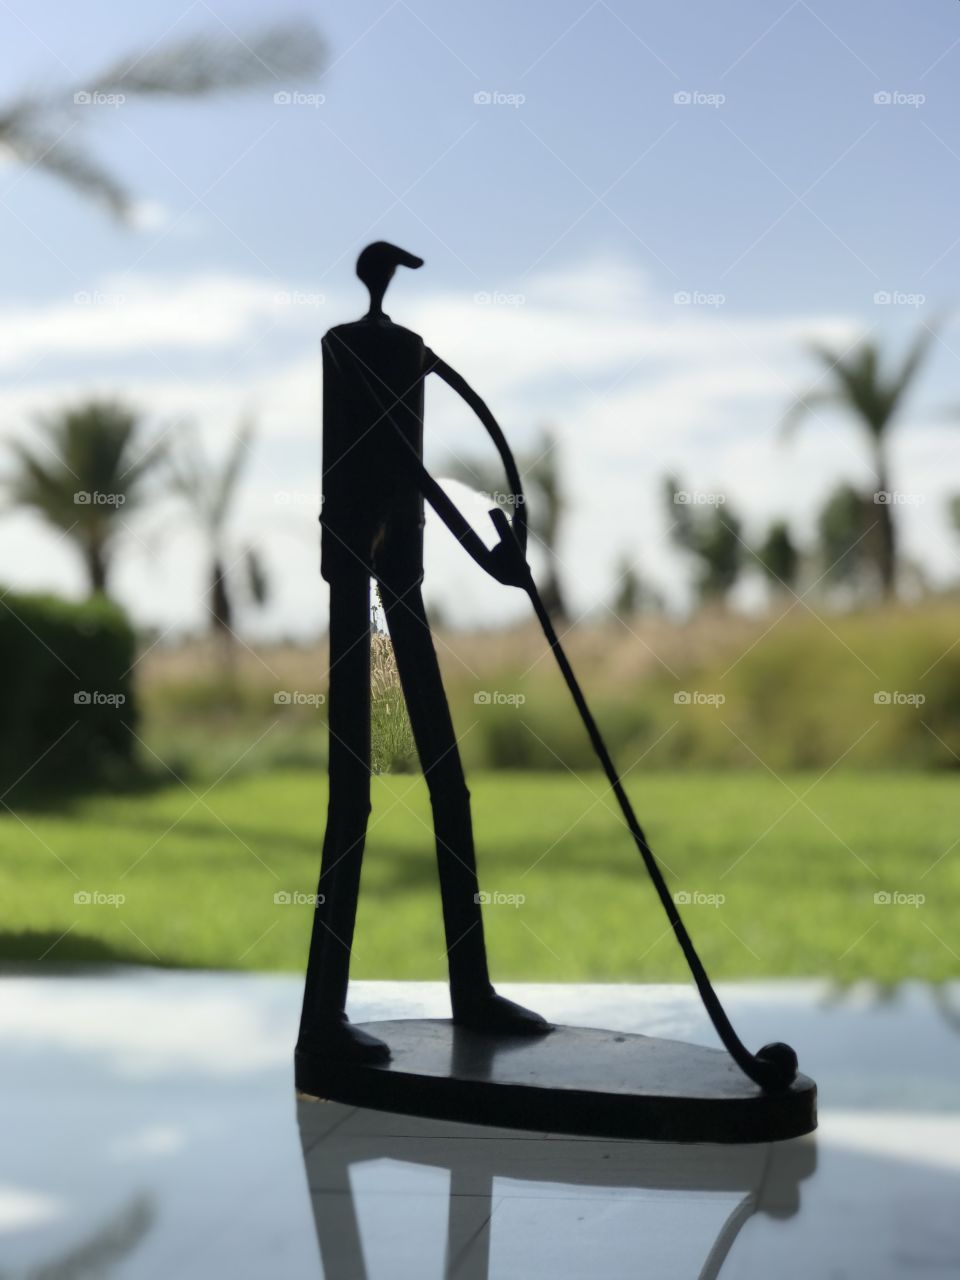 Sculpture golf